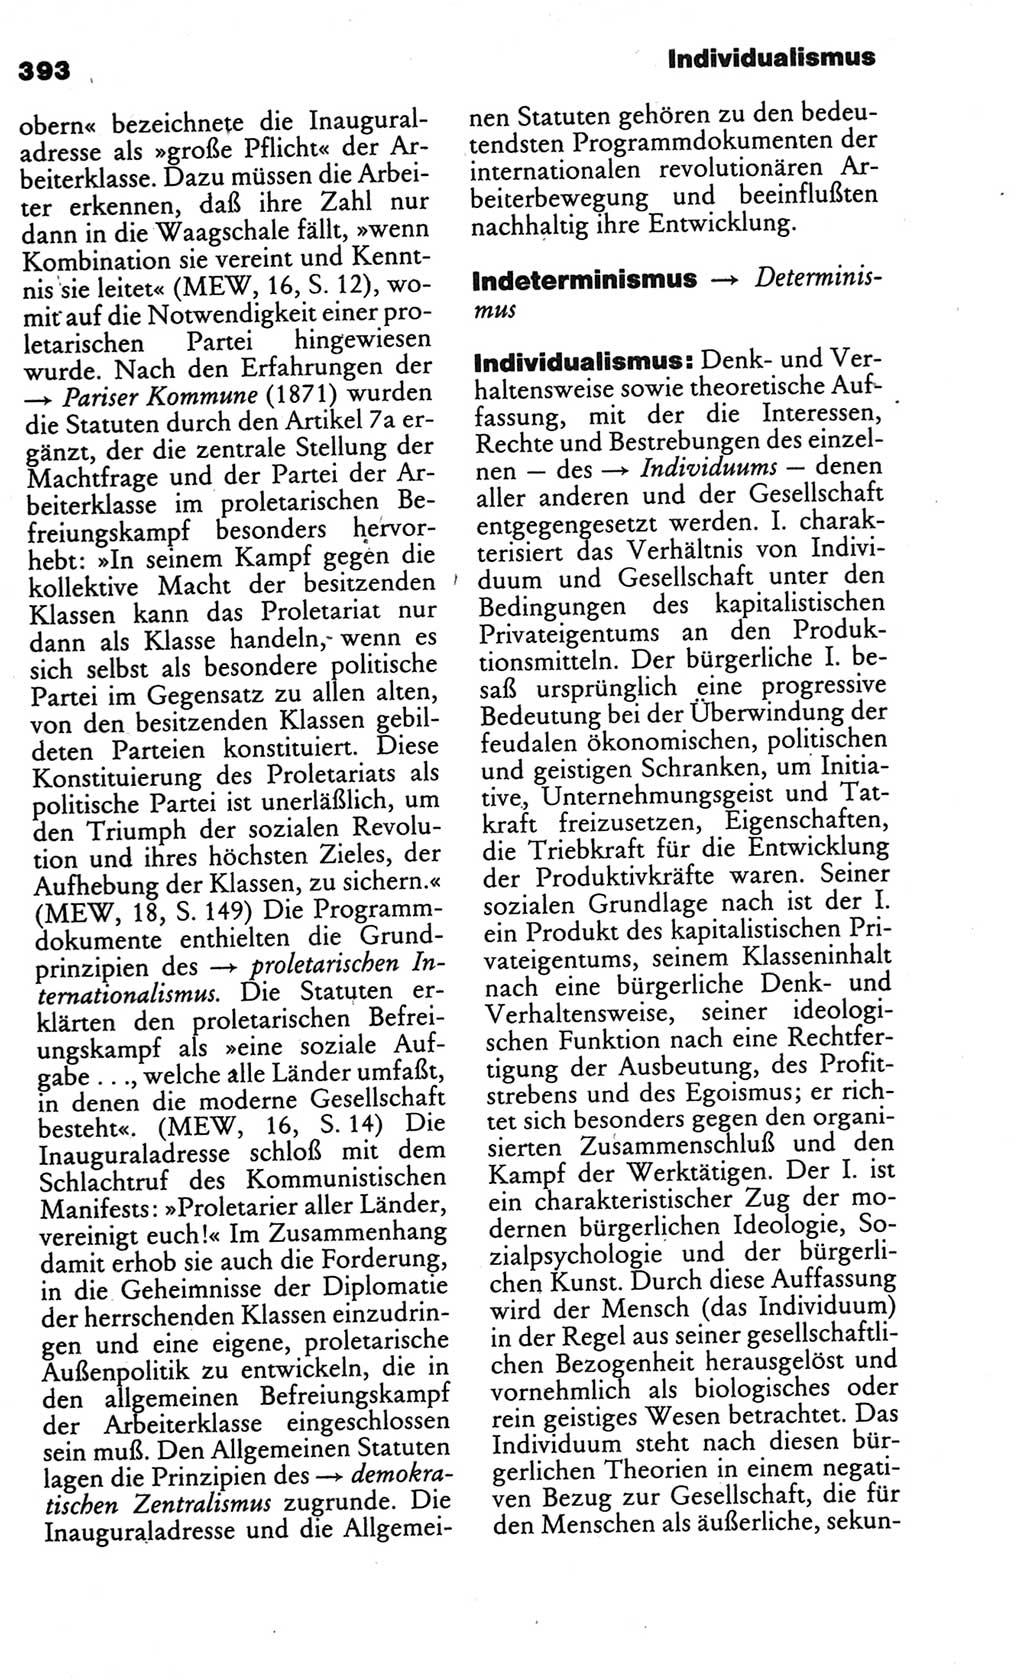 Kleines politisches Wörterbuch [Deutsche Demokratische Republik (DDR)] 1986, Seite 393 (Kl. pol. Wb. DDR 1986, S. 393)